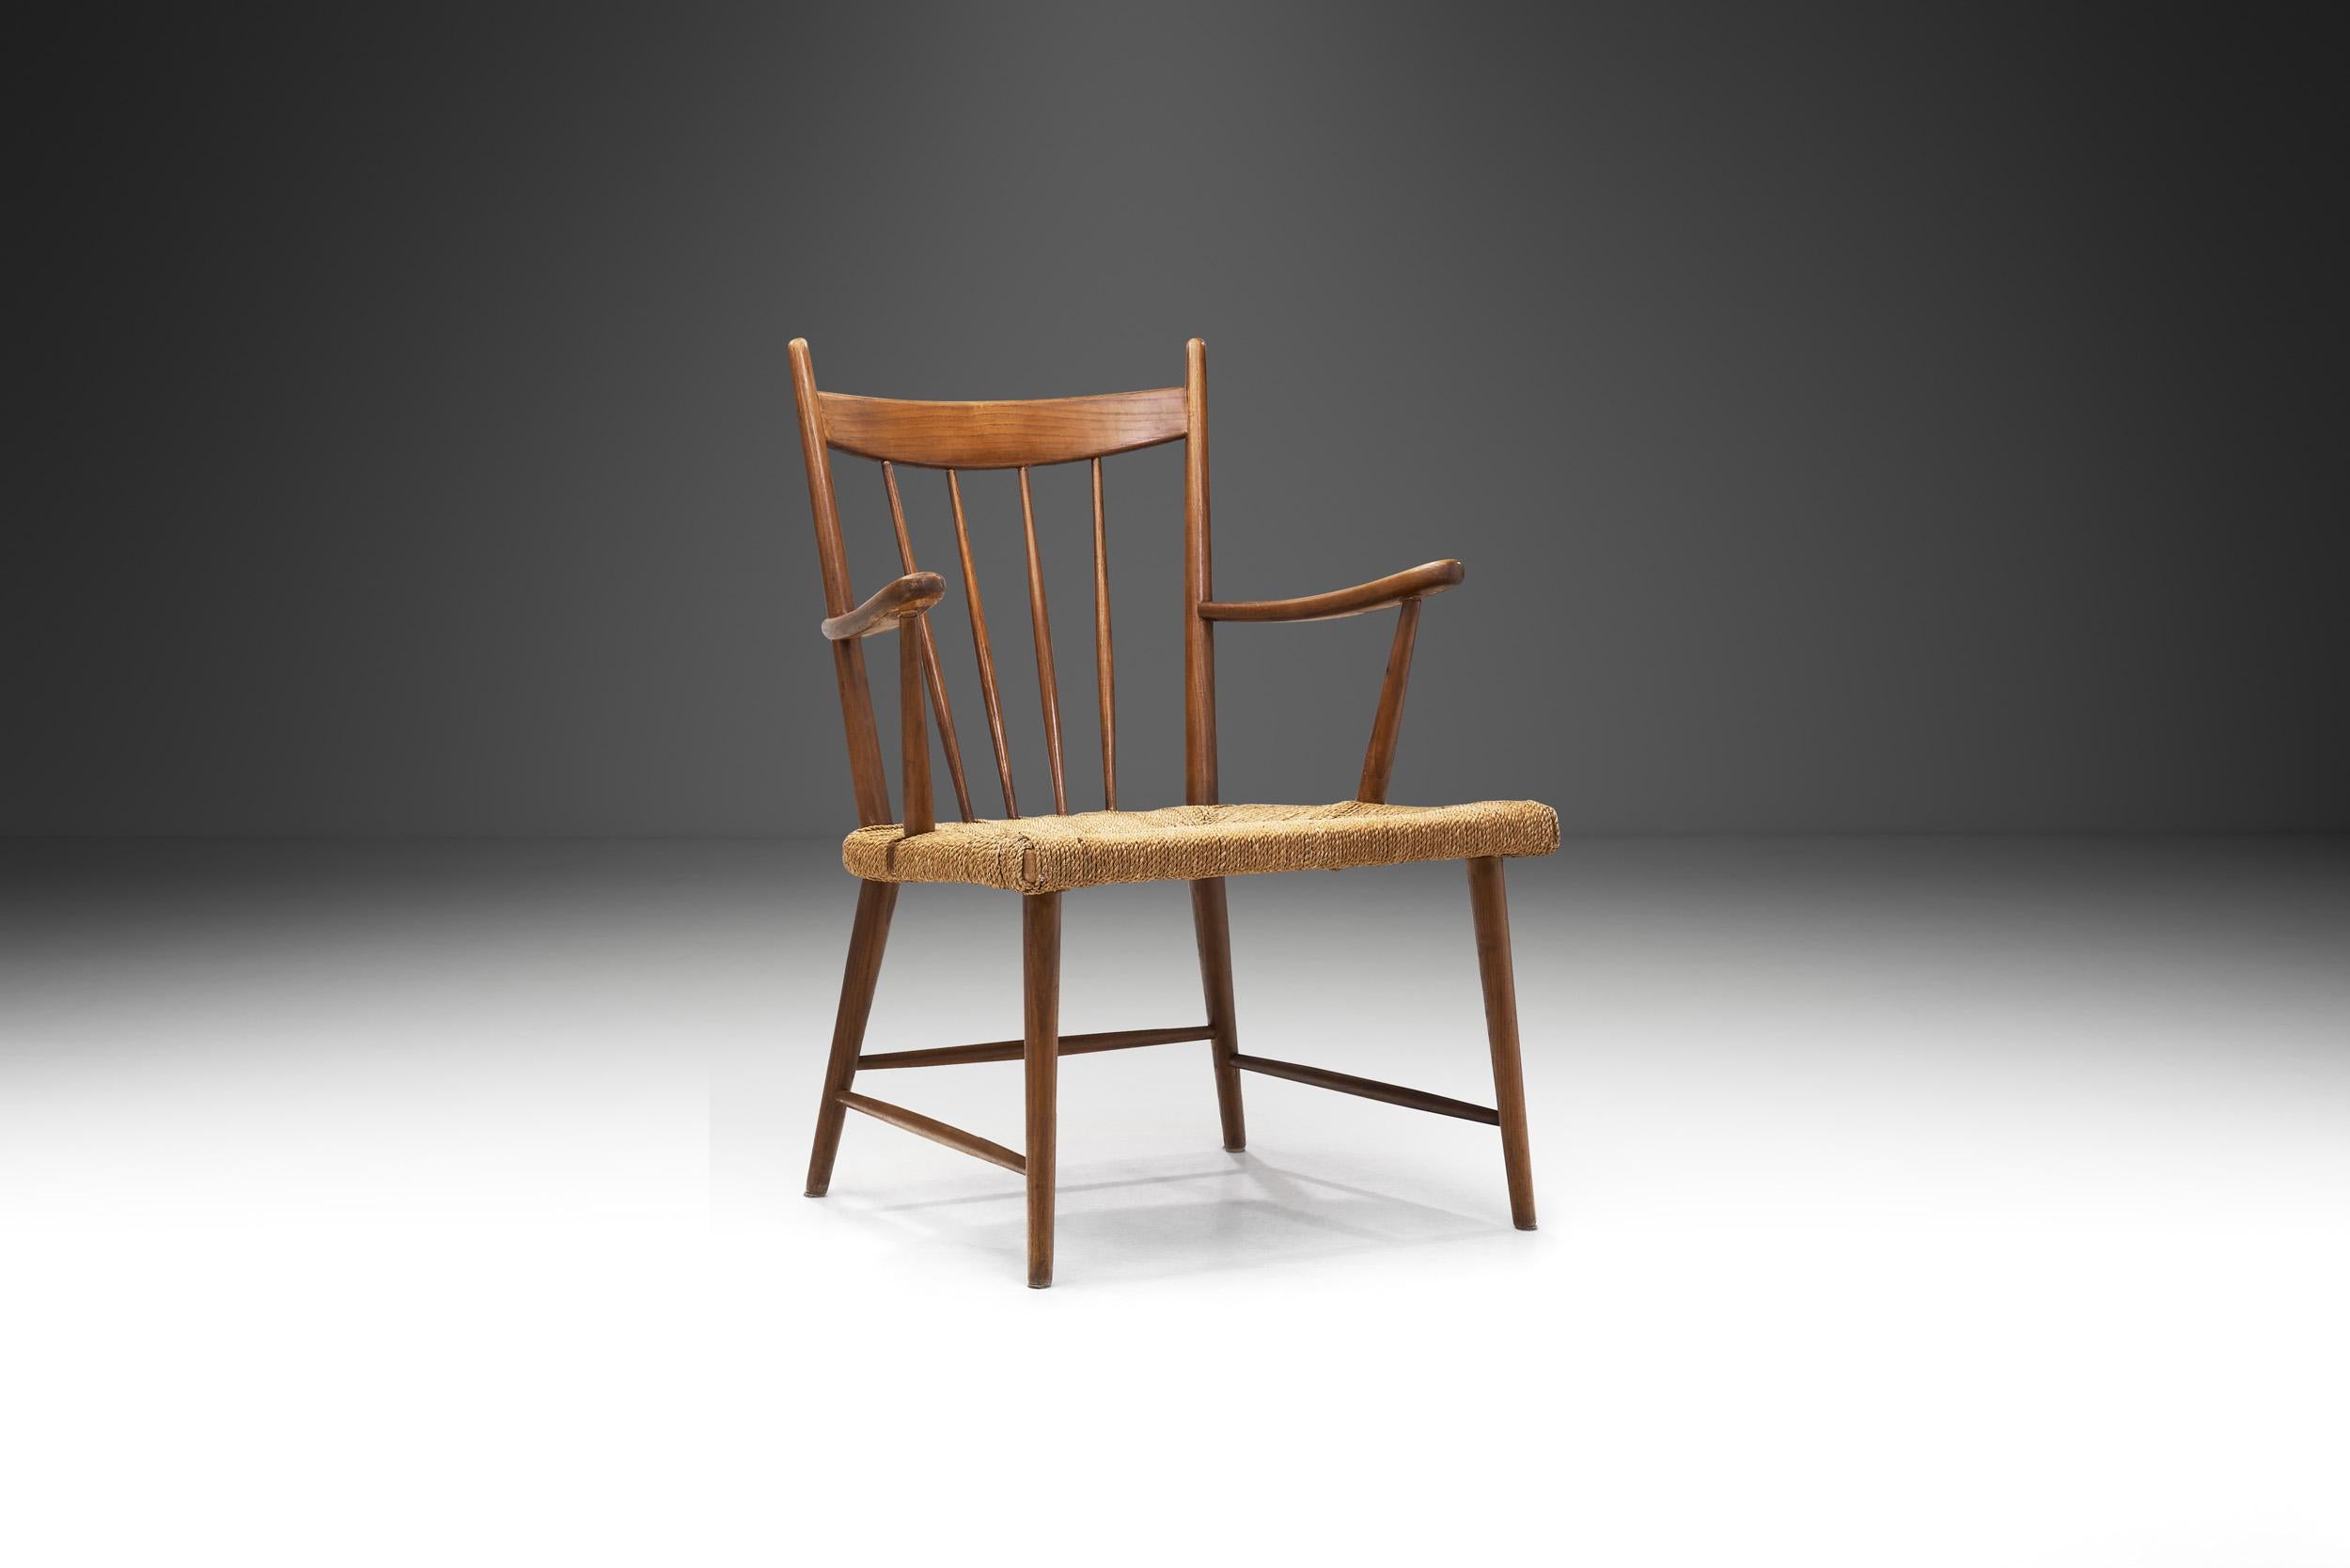 Die Entwürfe der meisten dänischen Möbeldesigner und Architekten der Jahrhundertmitte zielten auf Funktionalität, ein ebenso minimalistisches wie ansprechendes Aussehen und leichte Zugänglichkeit. Dieser Lattenstuhl mit einer geflochtenen dänischen